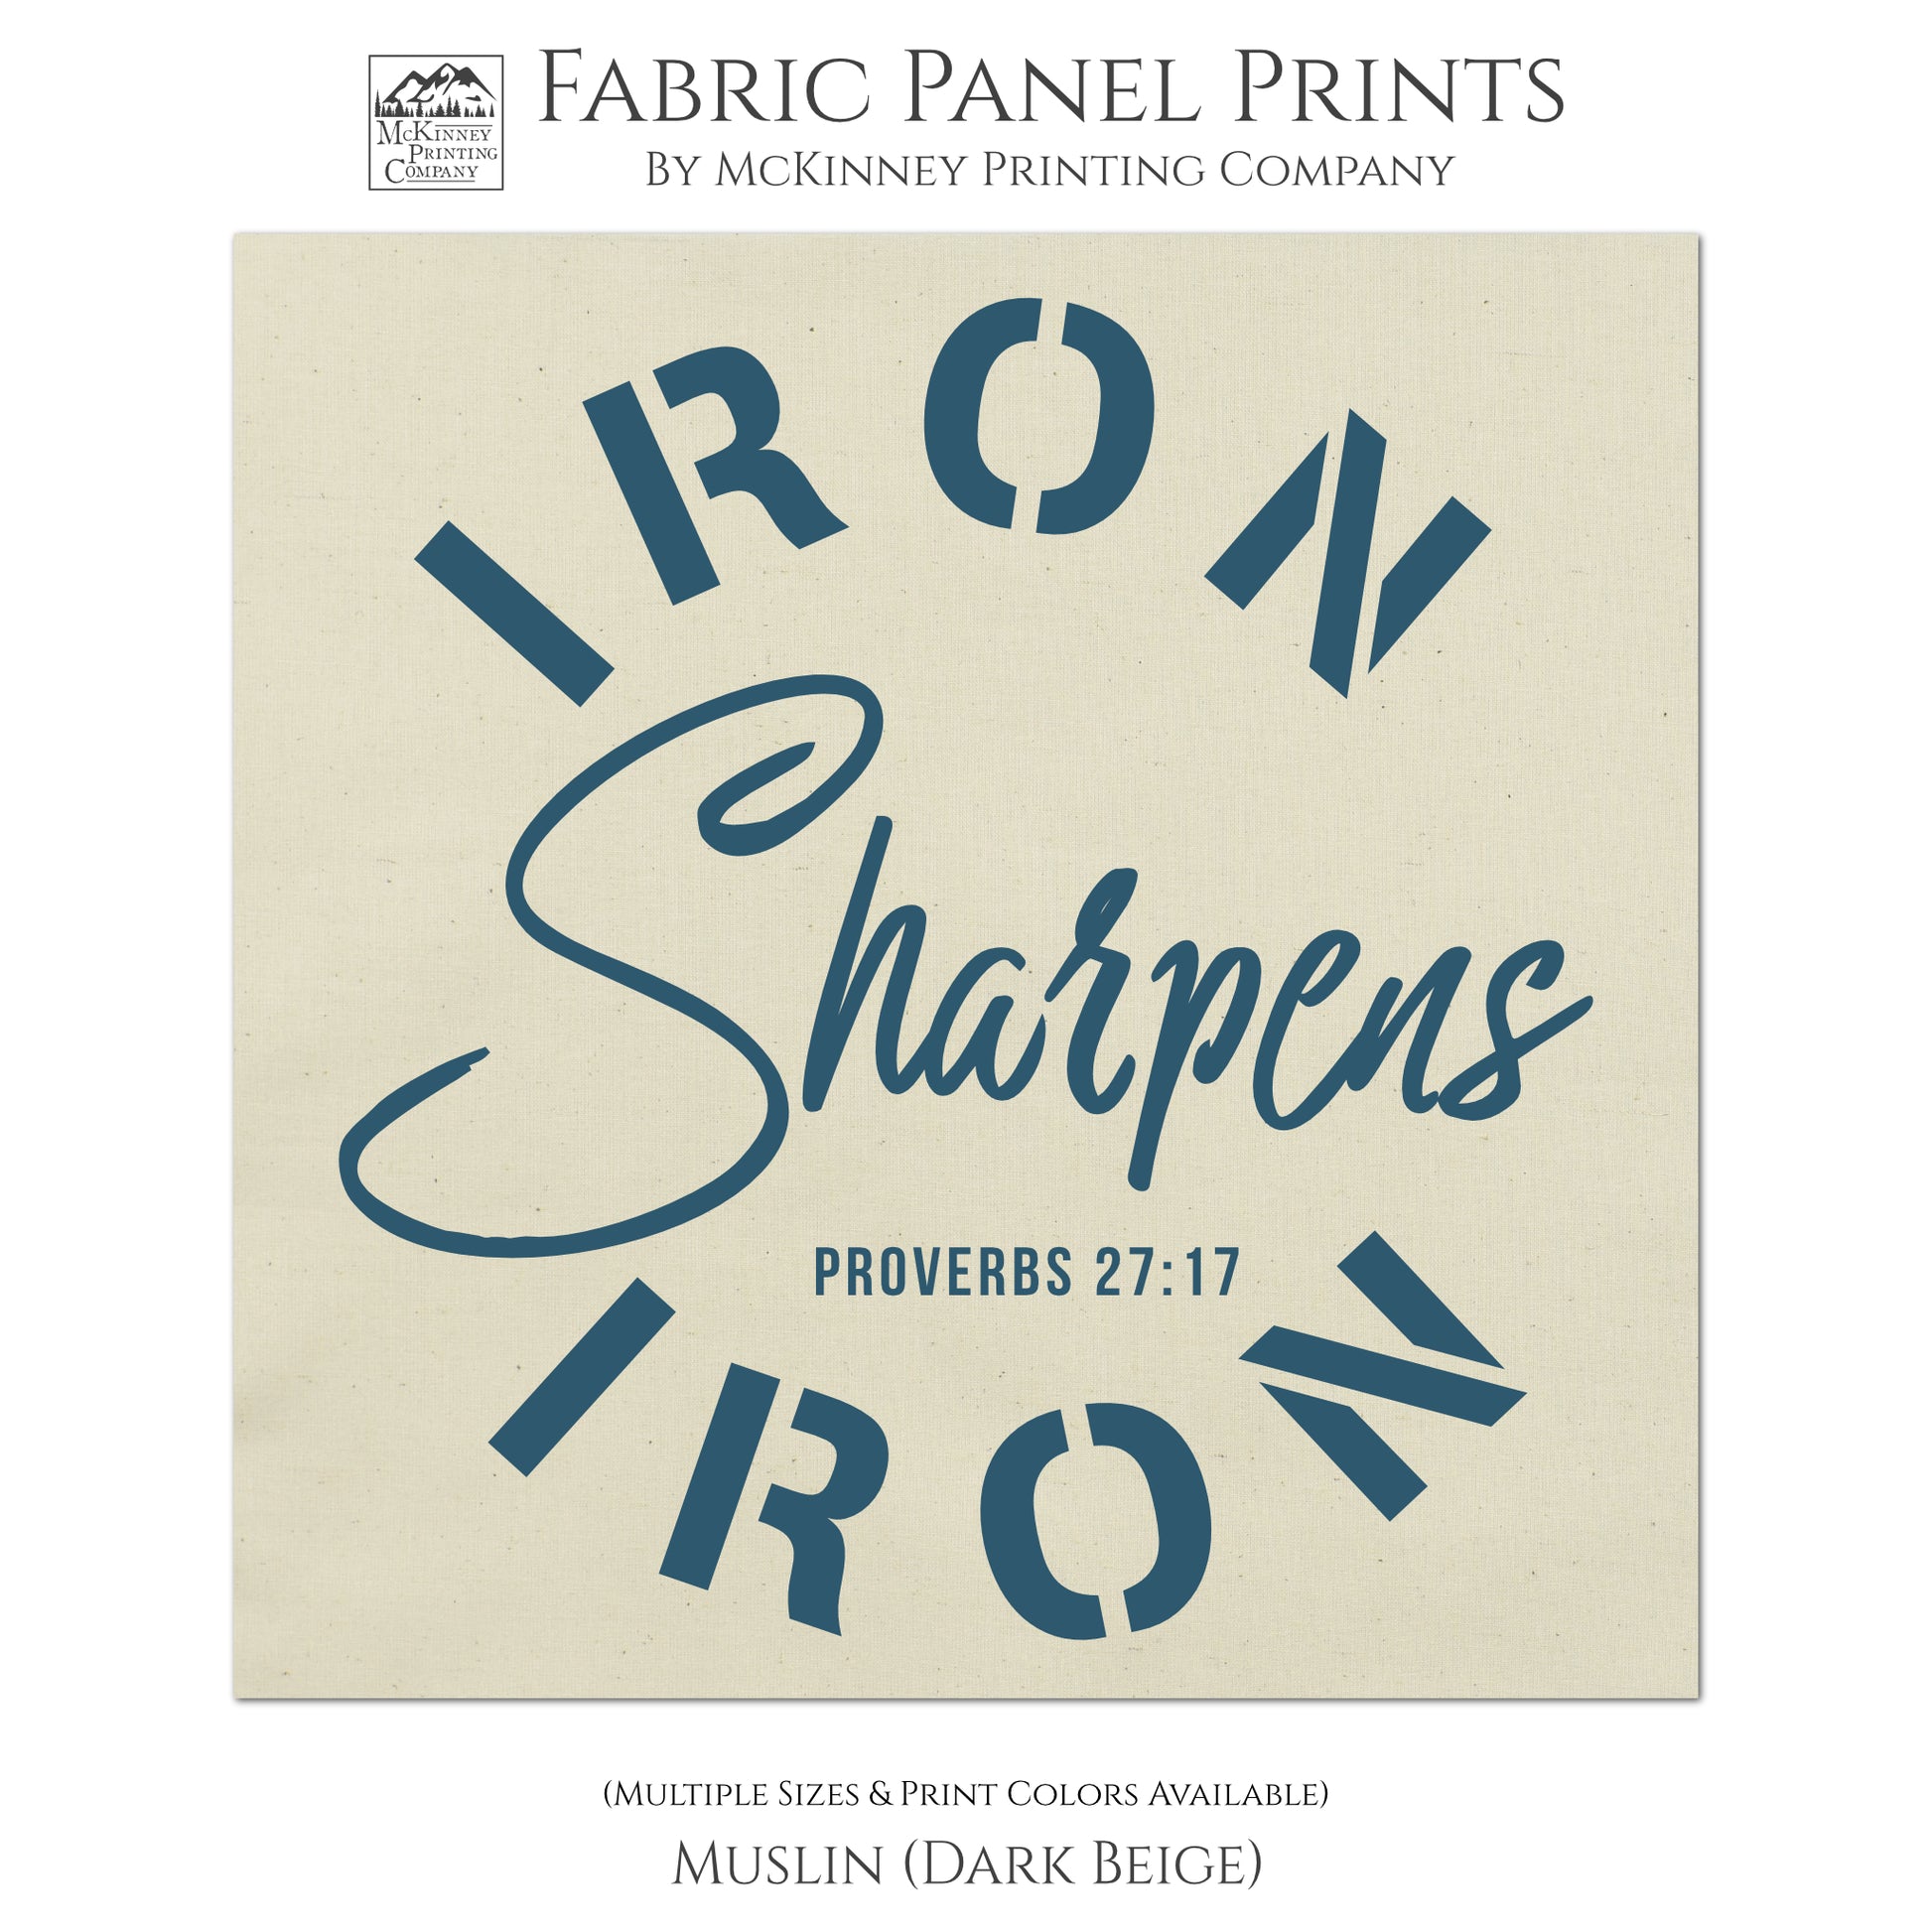 Iron Sharpens Iron - Proverbs 27:17 - Religious Fabric, Bible Verse Wall Art, Quilt Block - Muslin